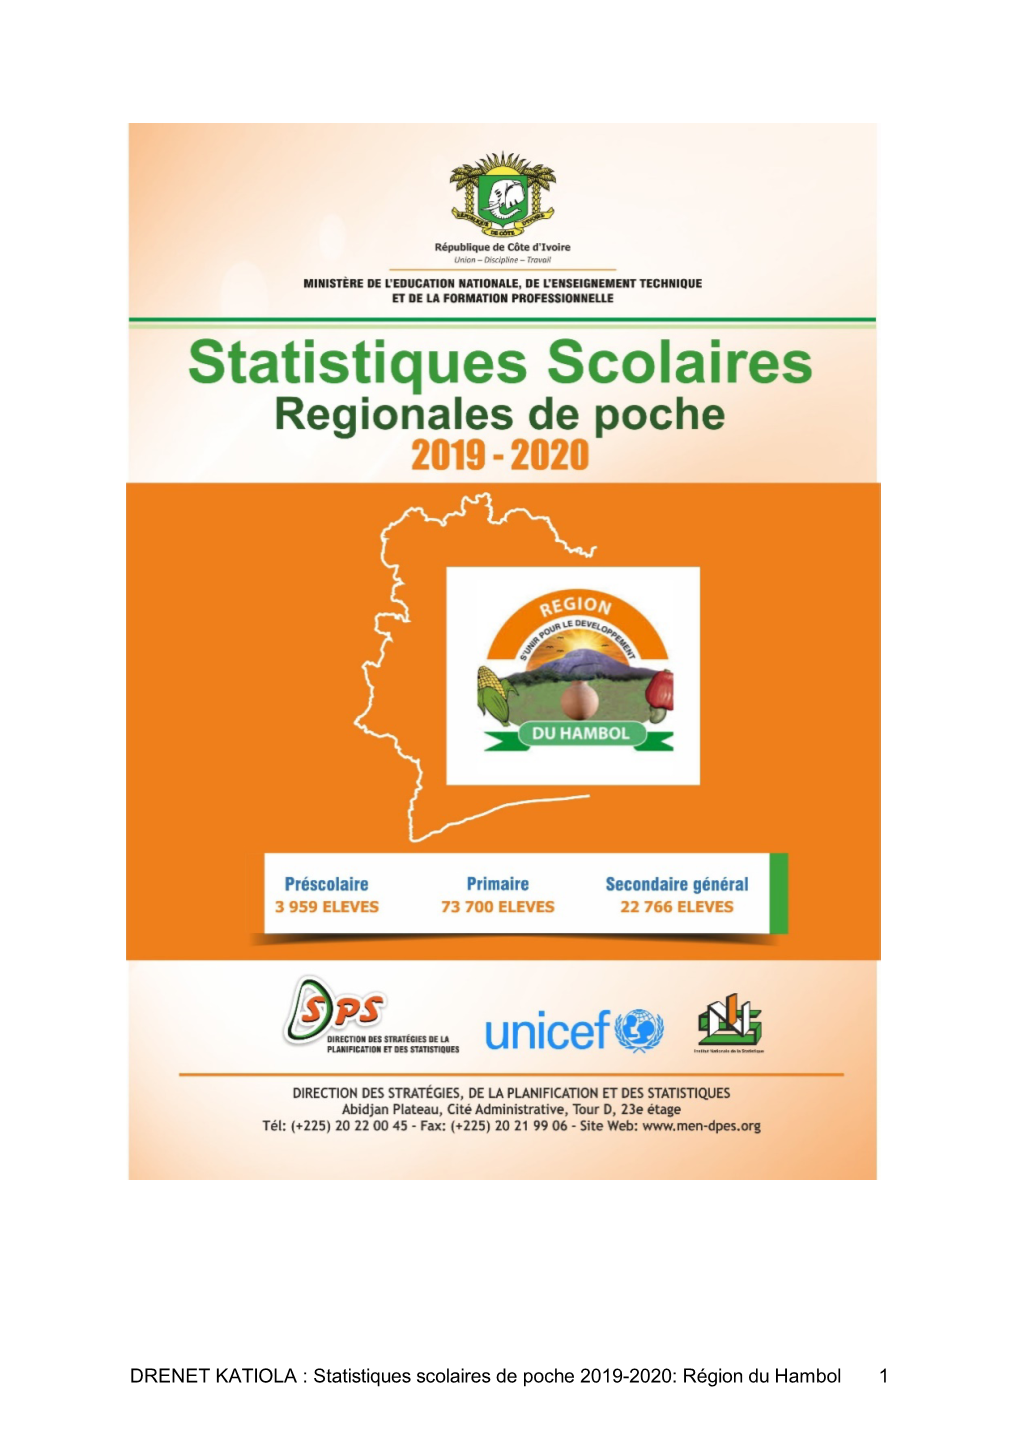 DRENET KATIOLA : Statistiques Scolaires De Poche 2019-2020: Région Du Hambol 1 AVANT-PROPOS